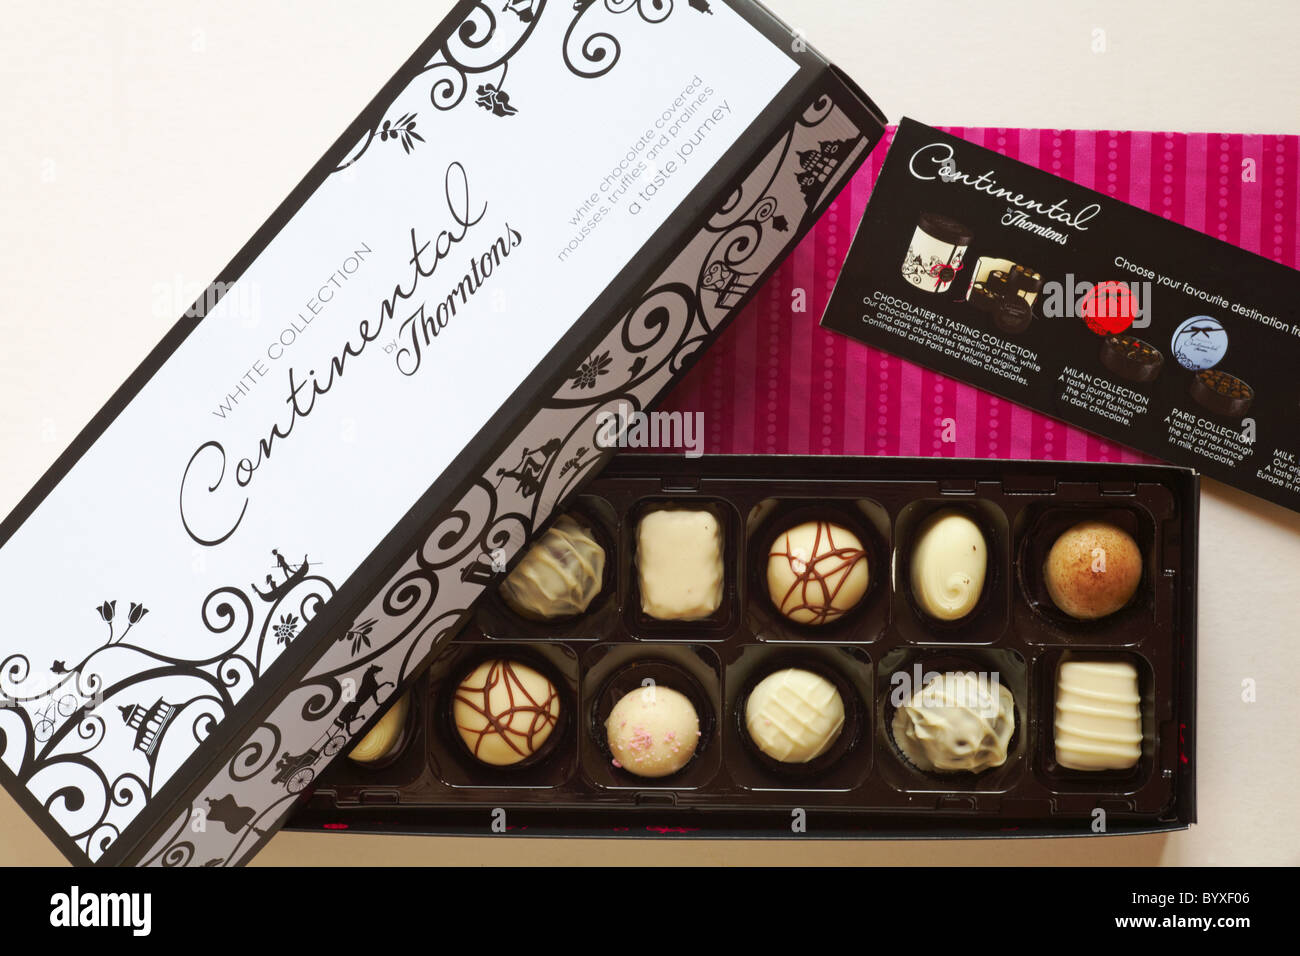 Box von Thorntons Continental weiß Kollektion Pralinen mit Deckel aus, das den Inhalt - weiße Schokolade Mousses, Trüffel und Pralinen Stockfoto